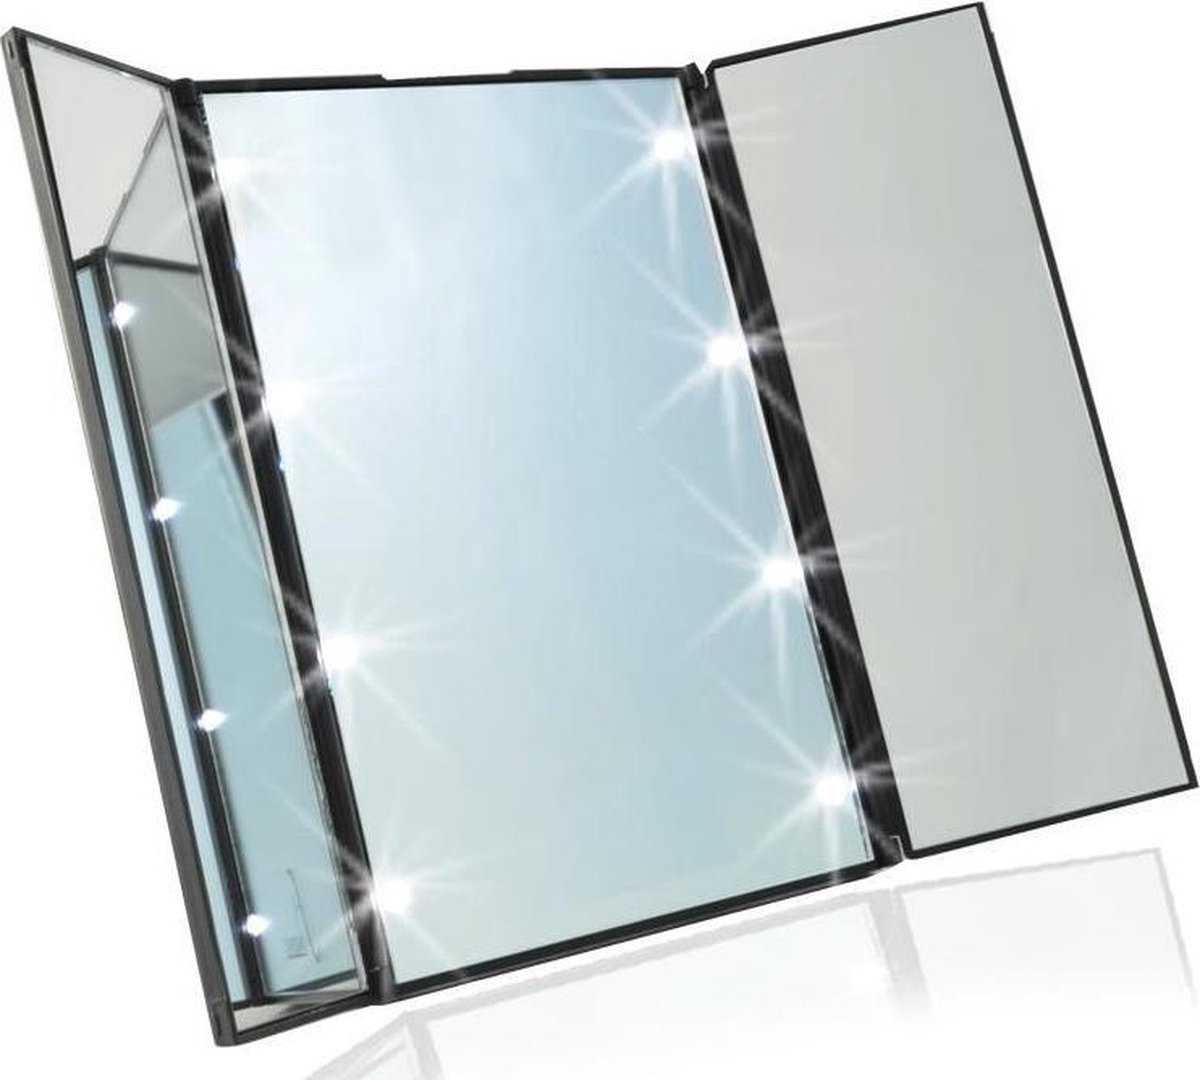 Kleine Draagbare LED Make-up Spiegel met verlichting! - 8 Led lichtjes - Voordeligste keus